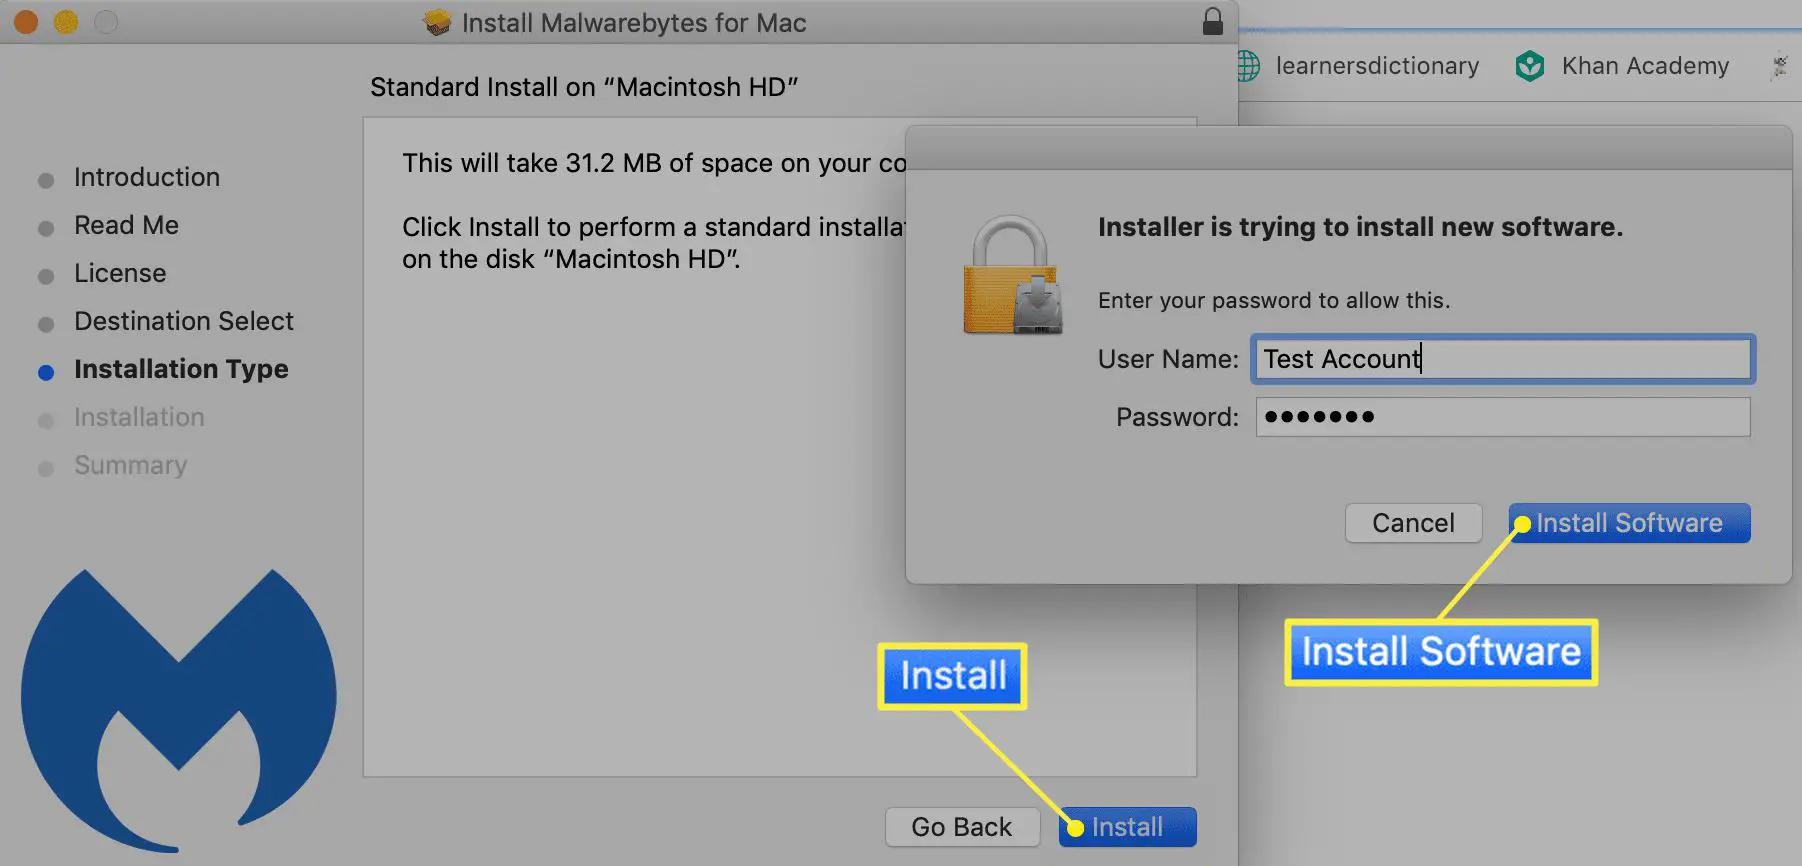 Caixa de diálogo de instalação do Malwarebytes for Mac